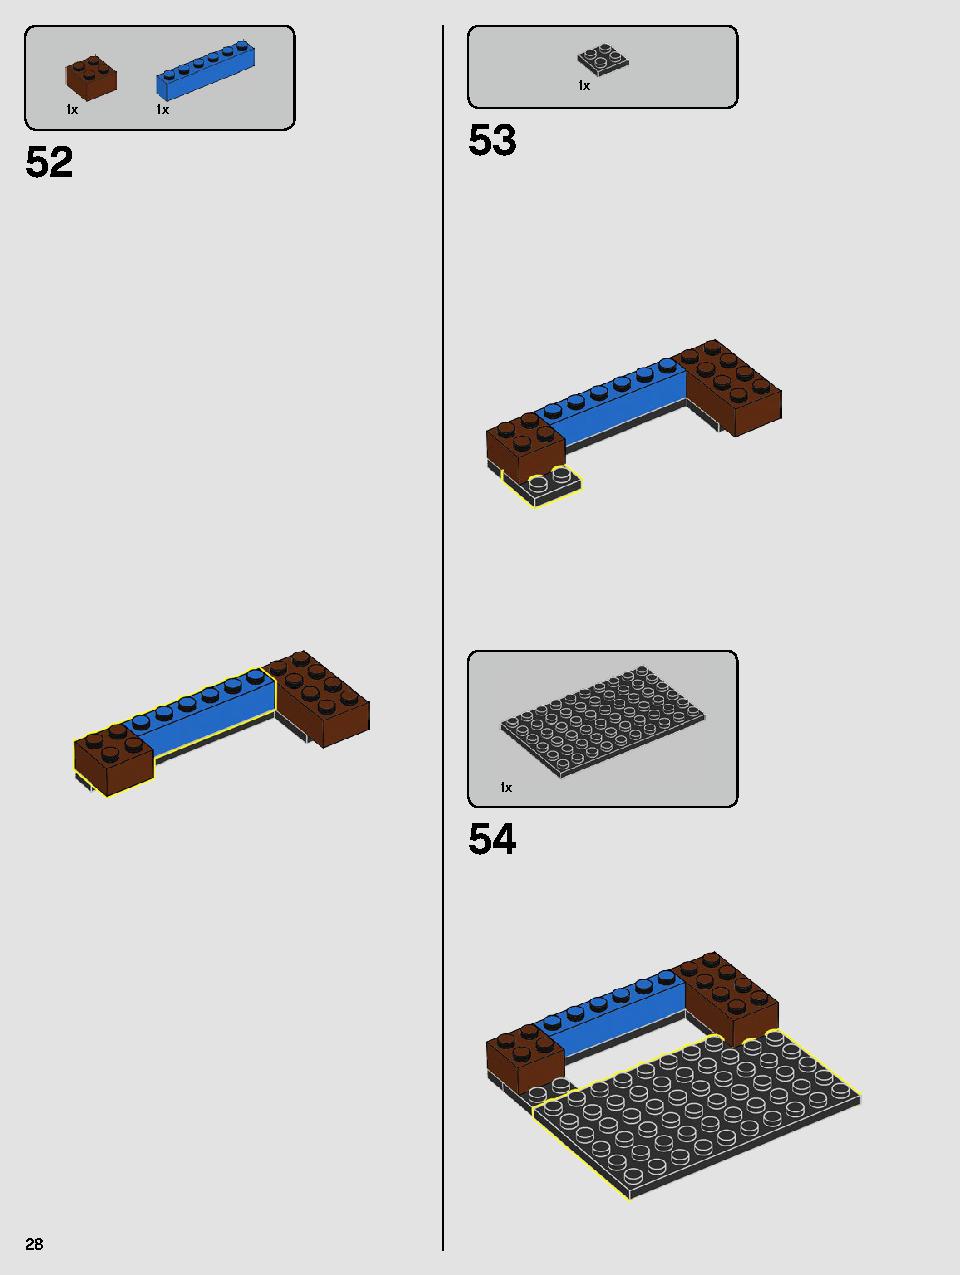 ヨーダ™ 75255 レゴの商品情報 レゴの説明書・組立方法 28 page